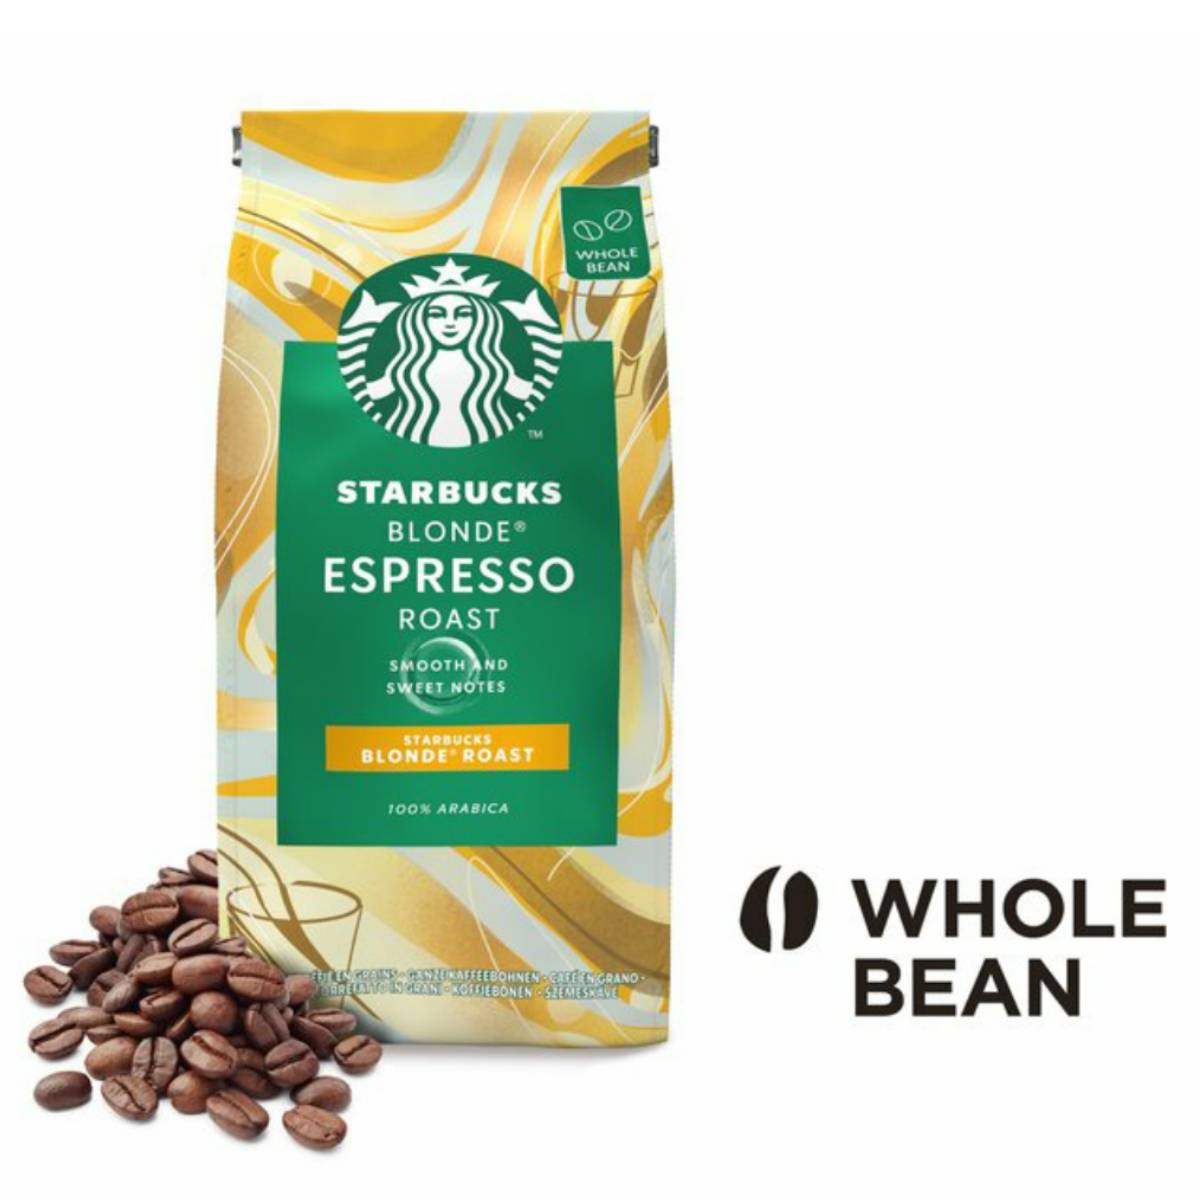 دانه قهوه اسپرسو بلوند استارباکس - ۲۰۰ گرم